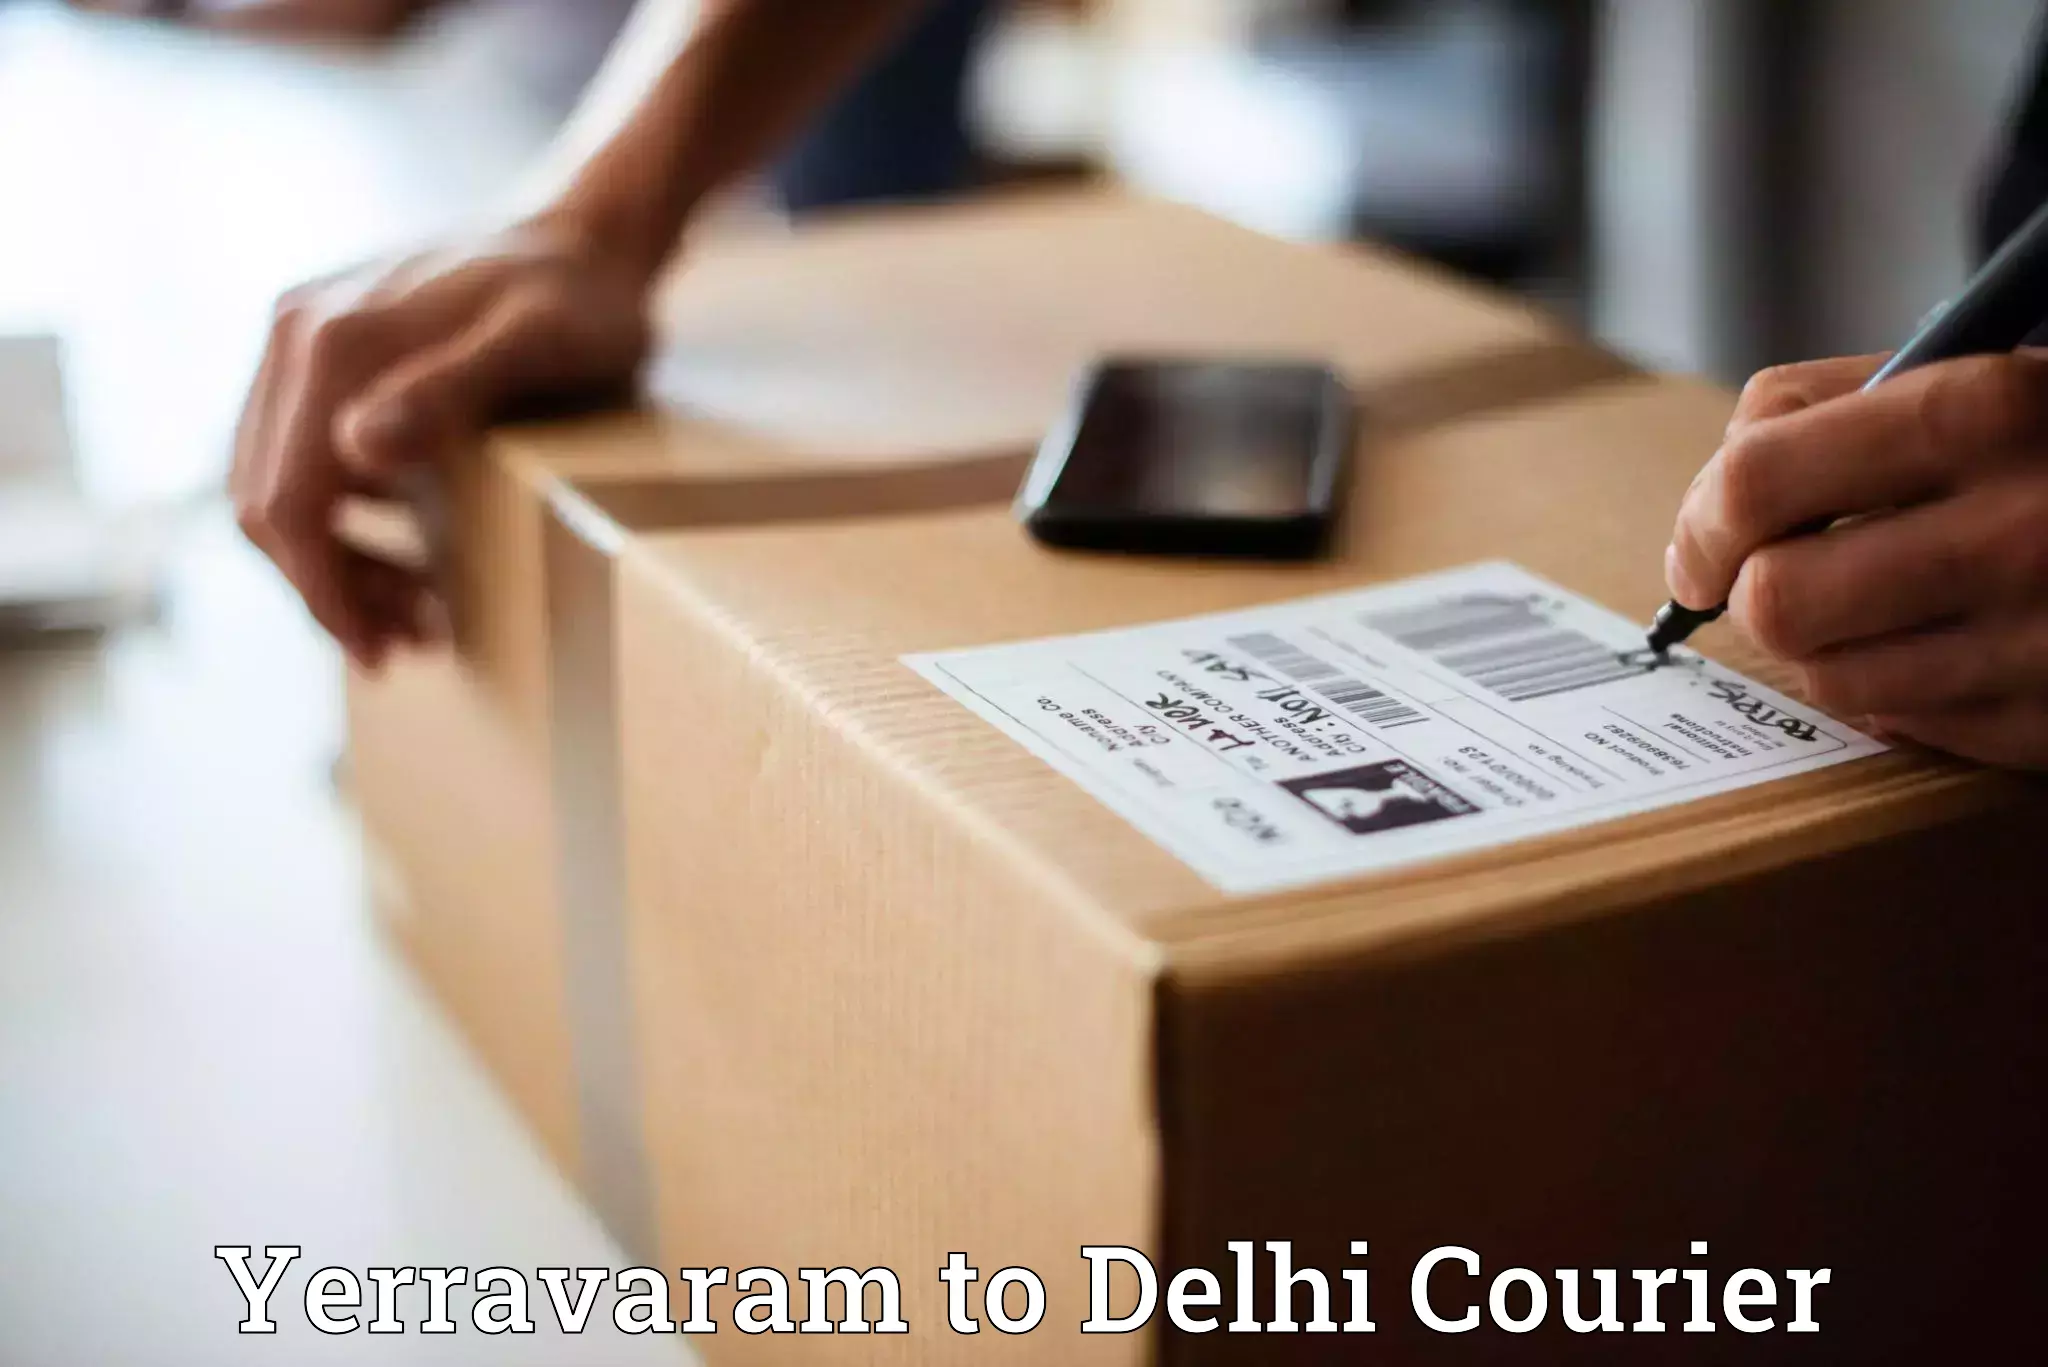 Door-to-door freight service Yerravaram to University of Delhi